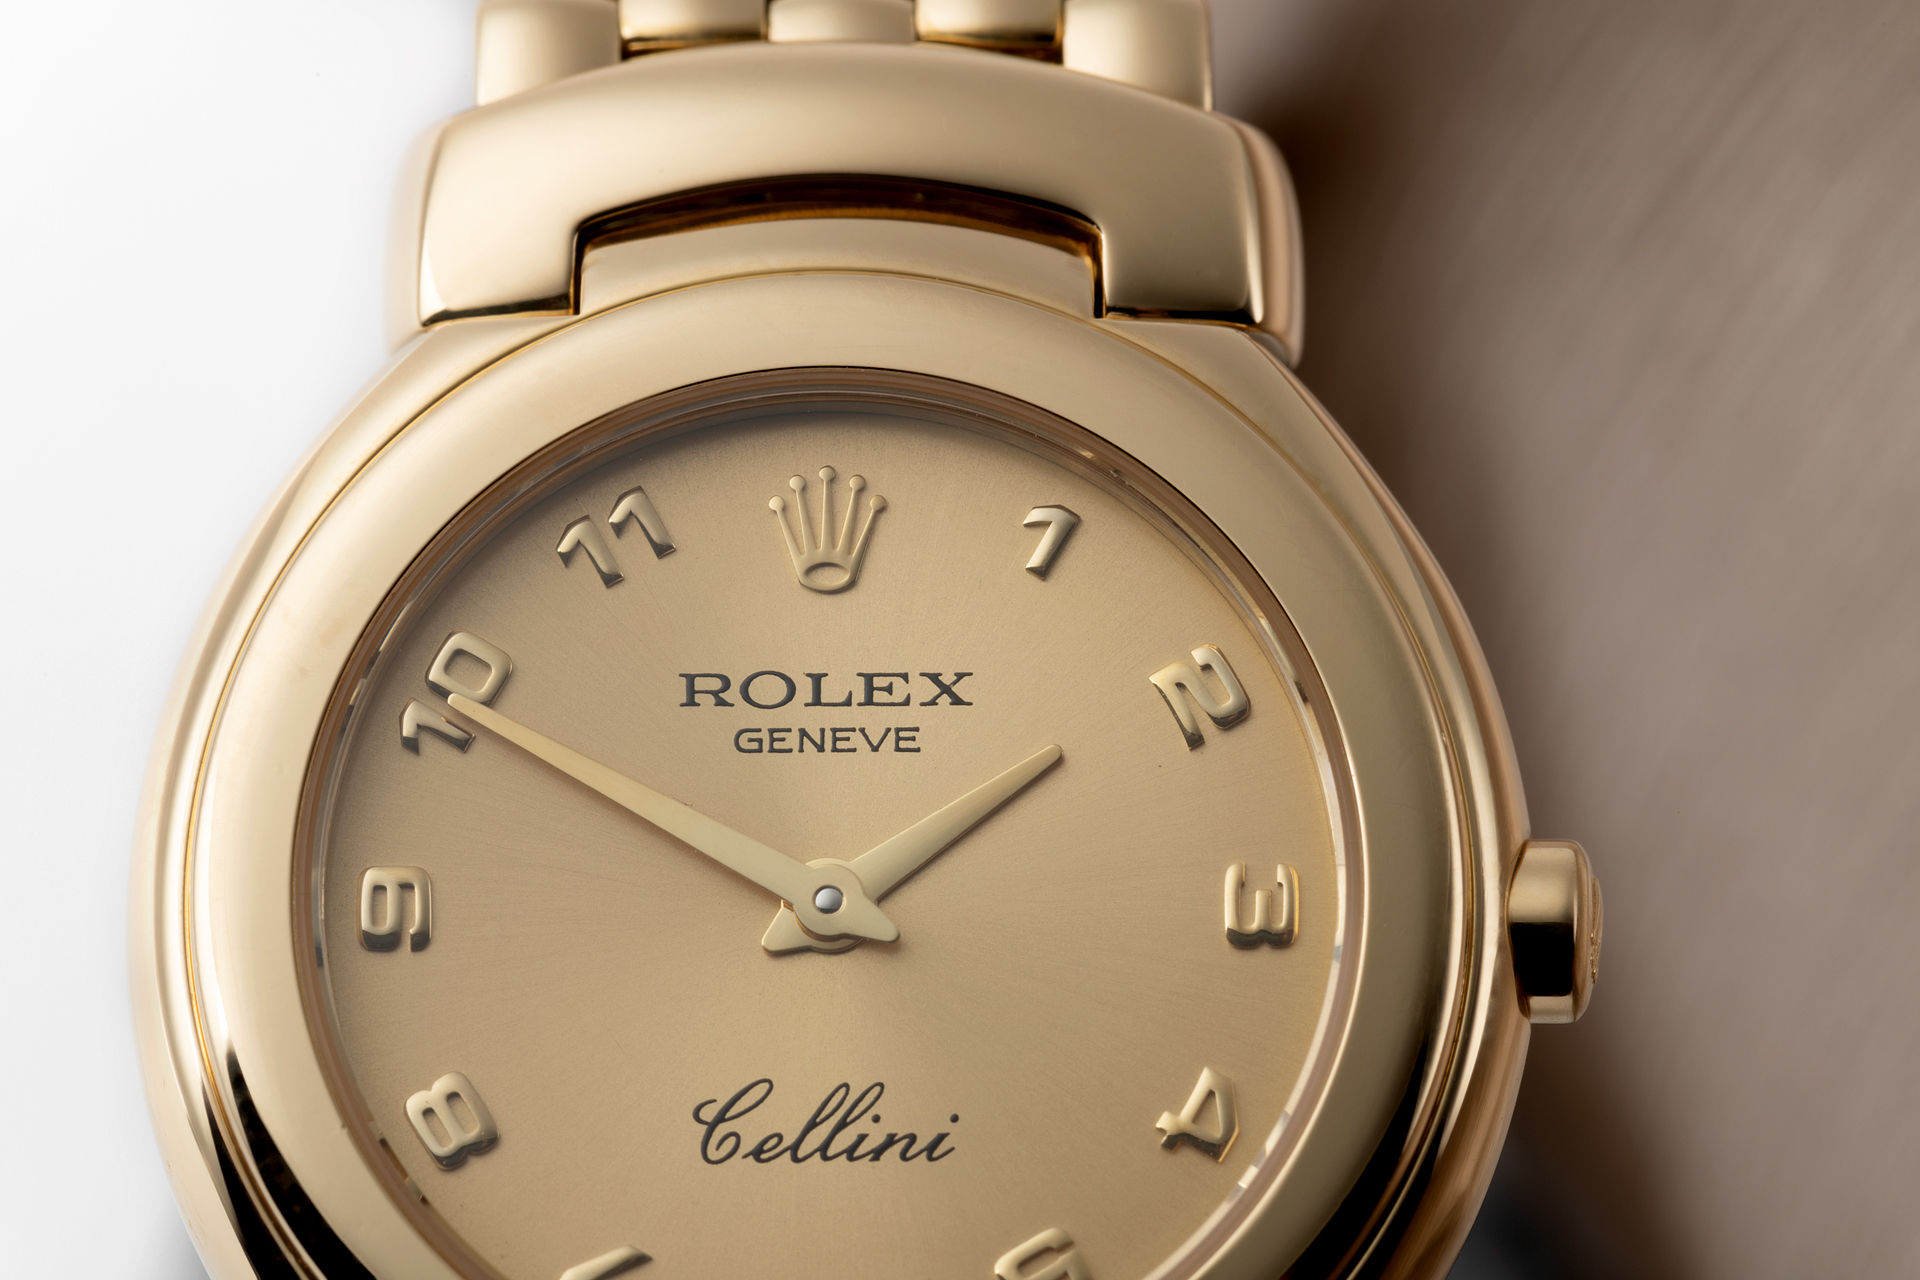 ref 6621/8 | 18ct Yellow Gold  | Rolex Cellini